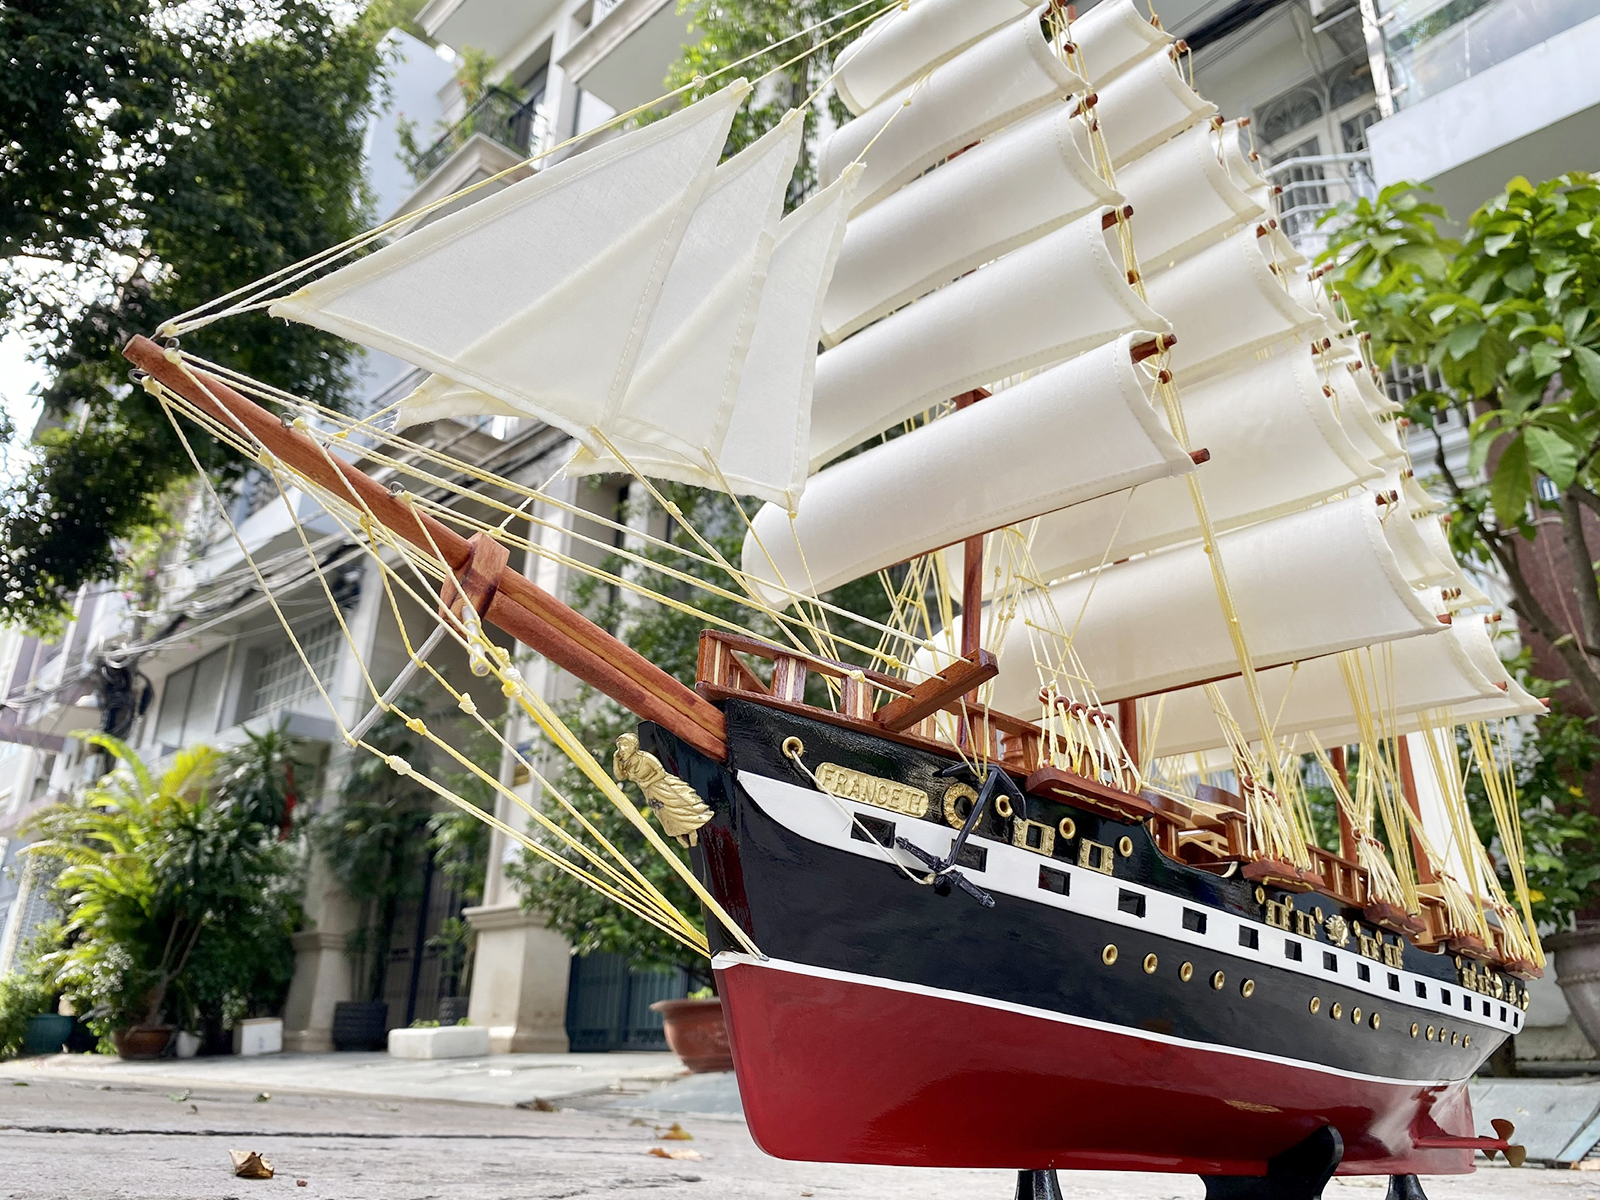 Thuyền gỗ trang trí France 2 Painted dài 104cm gỗ tự nhiên, mô hình thuyền buồm phong thủy, quà tặng khách hàng cao cấp